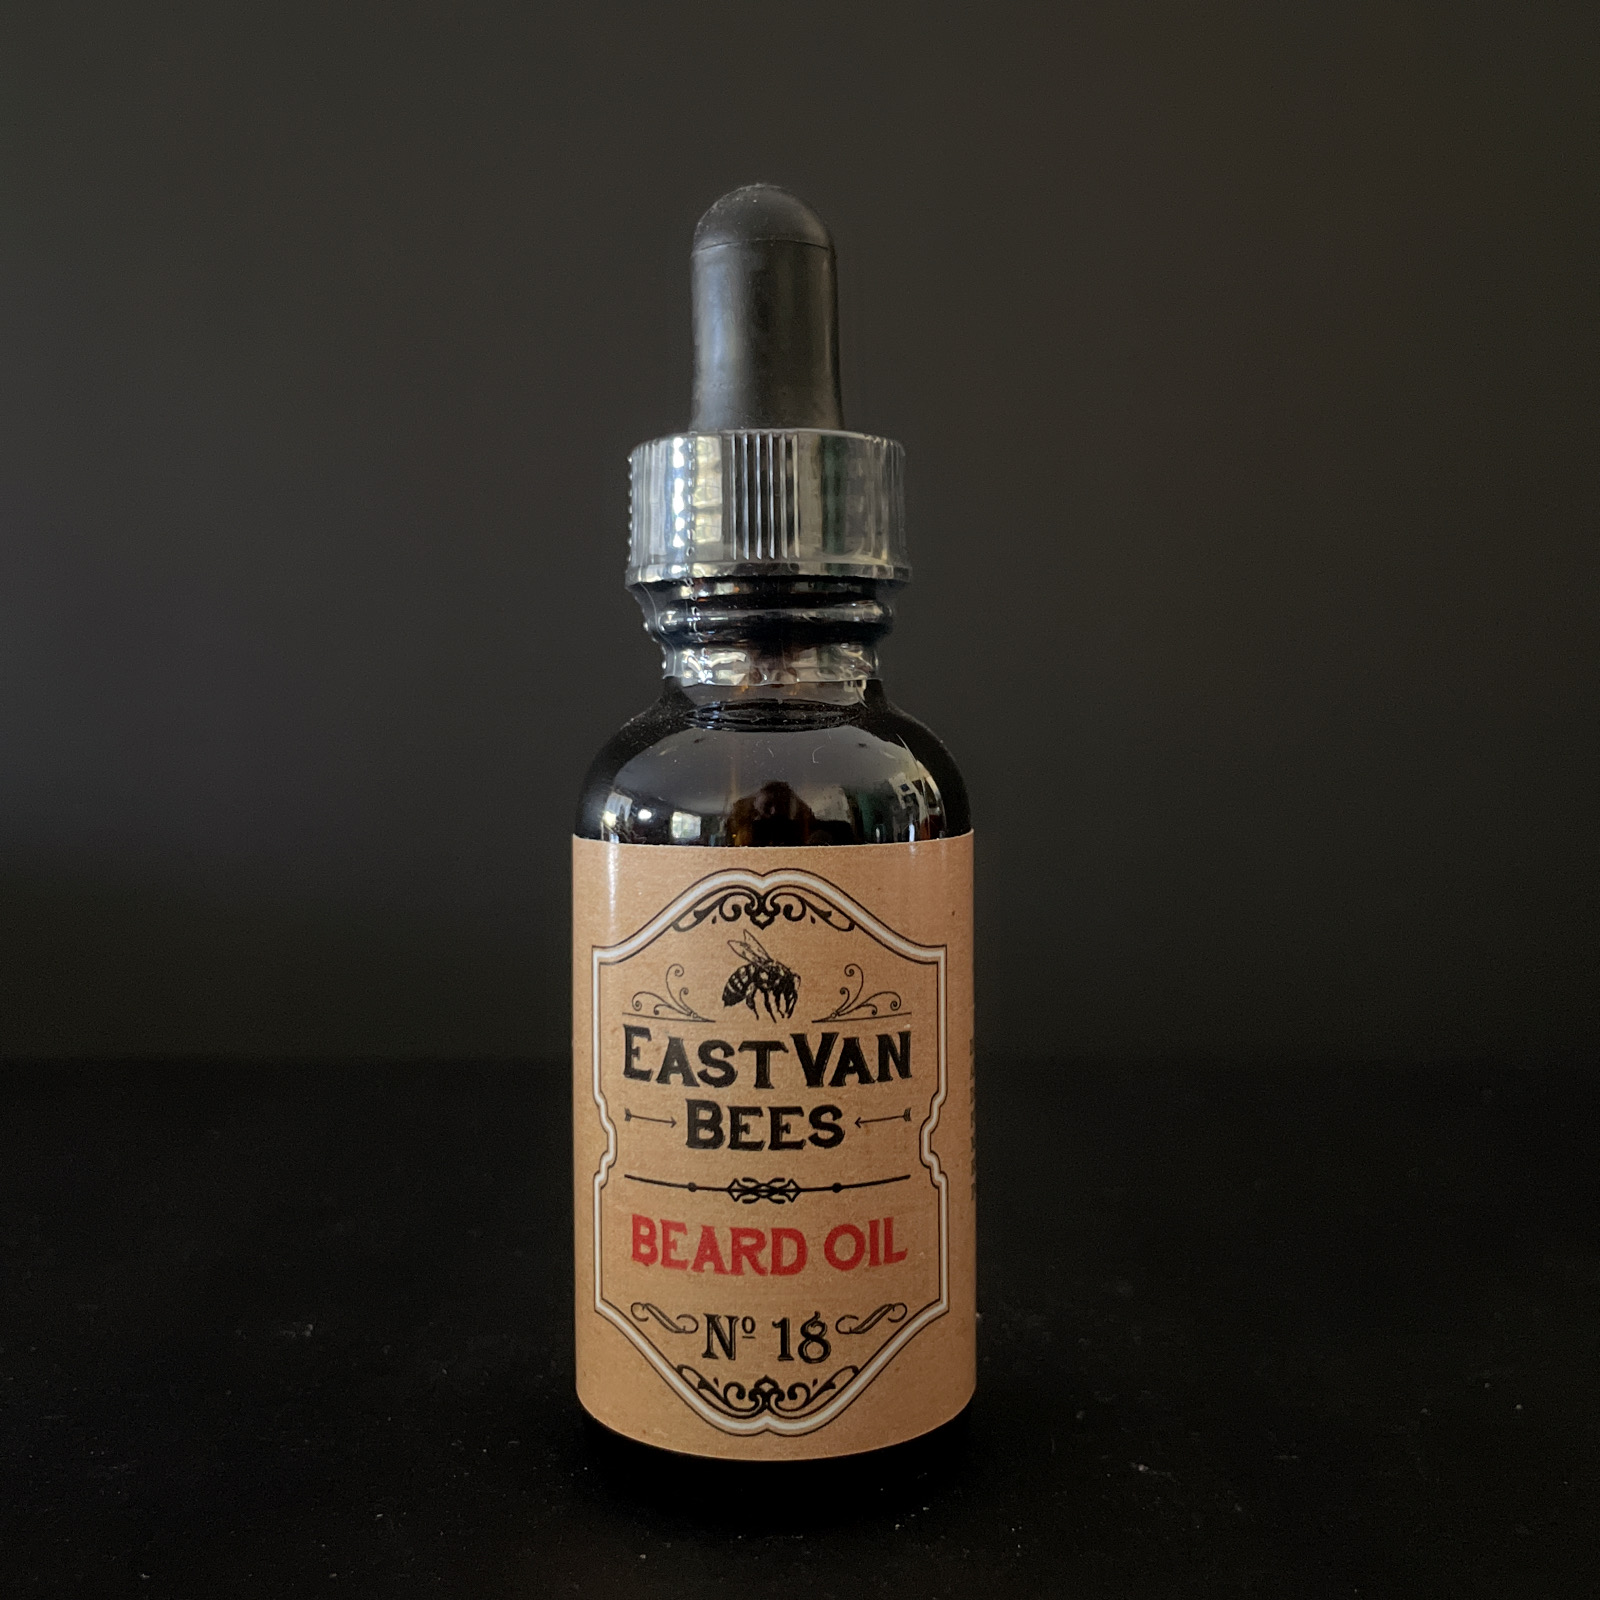 East Van Bees: Beard Oil